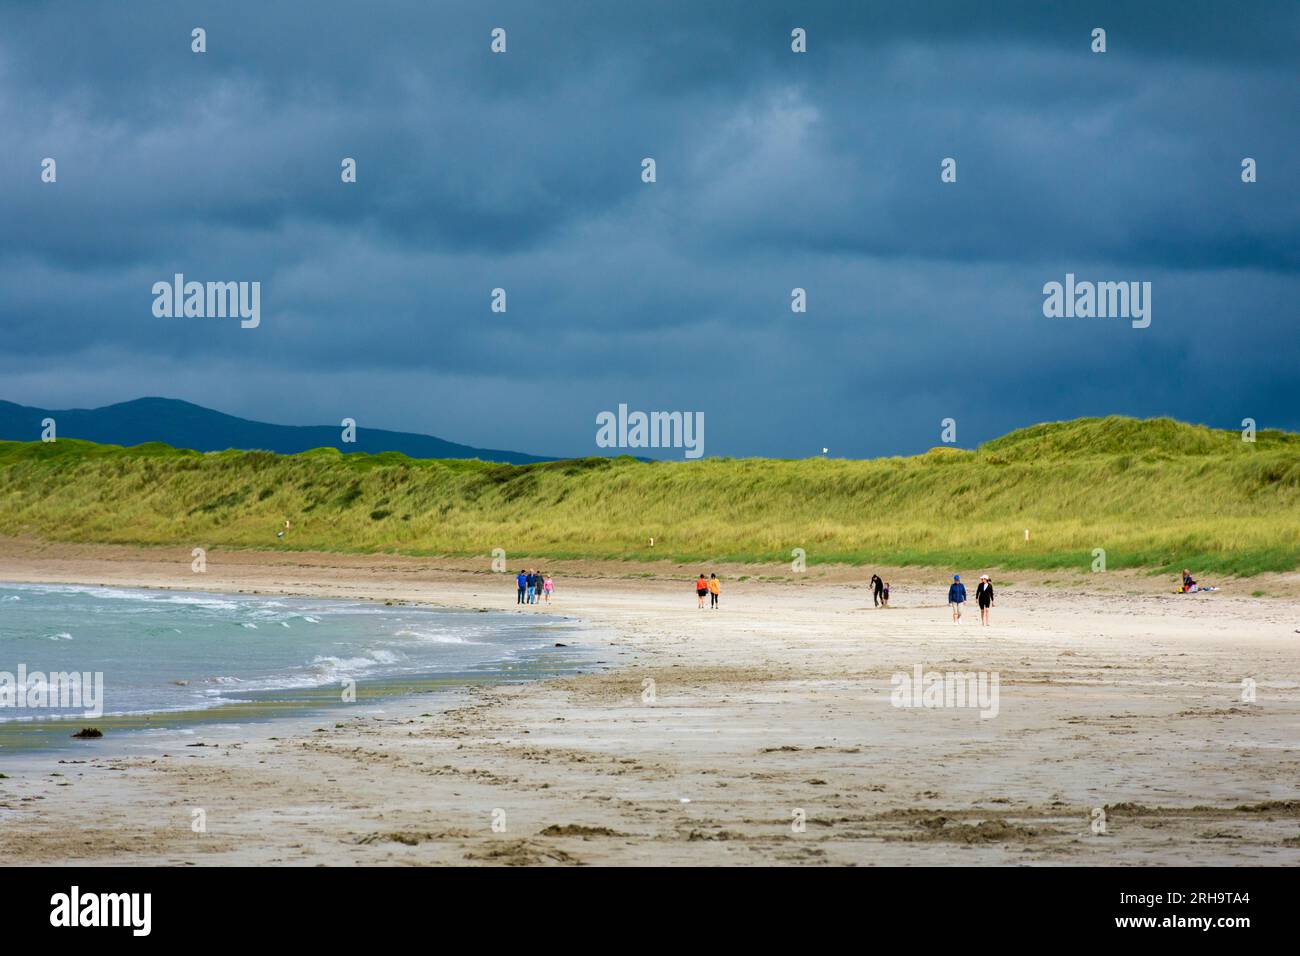 Narin Strand o spiaggia, vicino a Portnoo, Ardara, Contea di Donegal, Irlanda. Una spiaggia con bandiera blu sulla costa della Wild Atlantic Way. Foto Stock